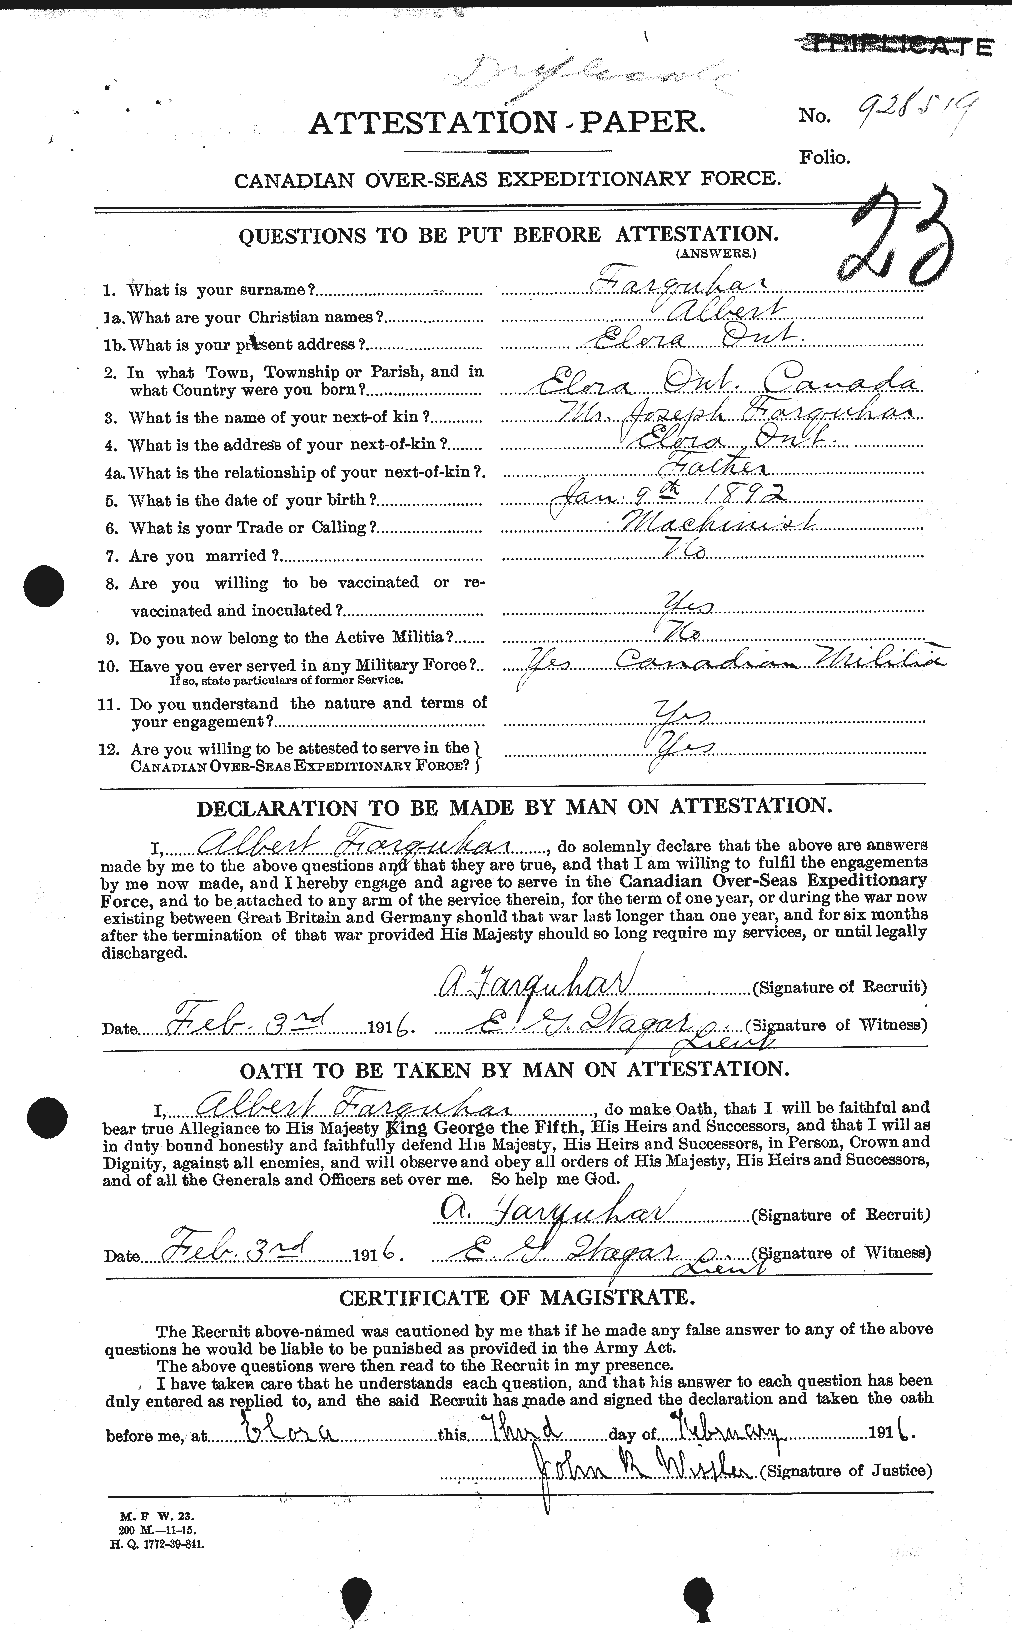 Dossiers du Personnel de la Première Guerre mondiale - CEC 318756a